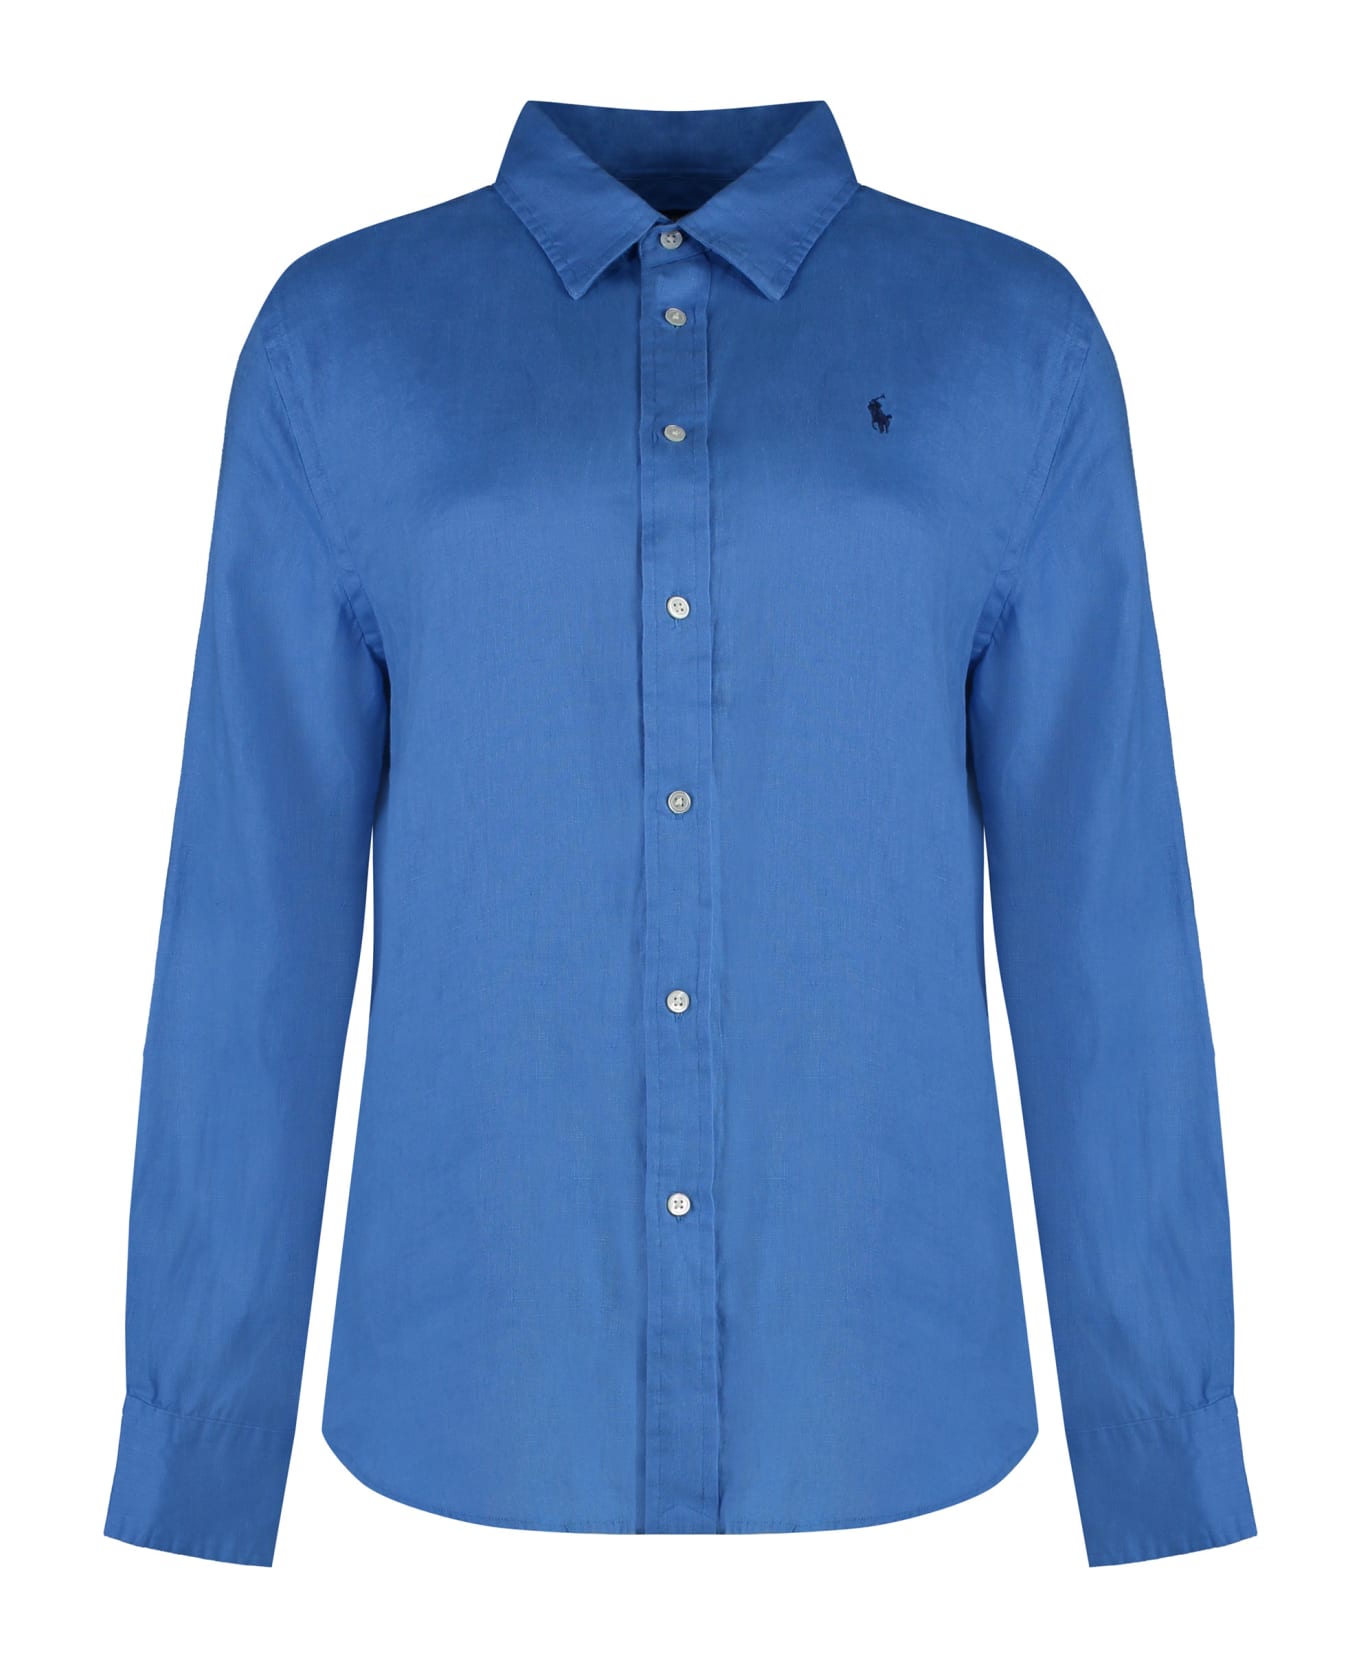 Ralph Lauren Linen Shirt - Riviera Blue シャツ